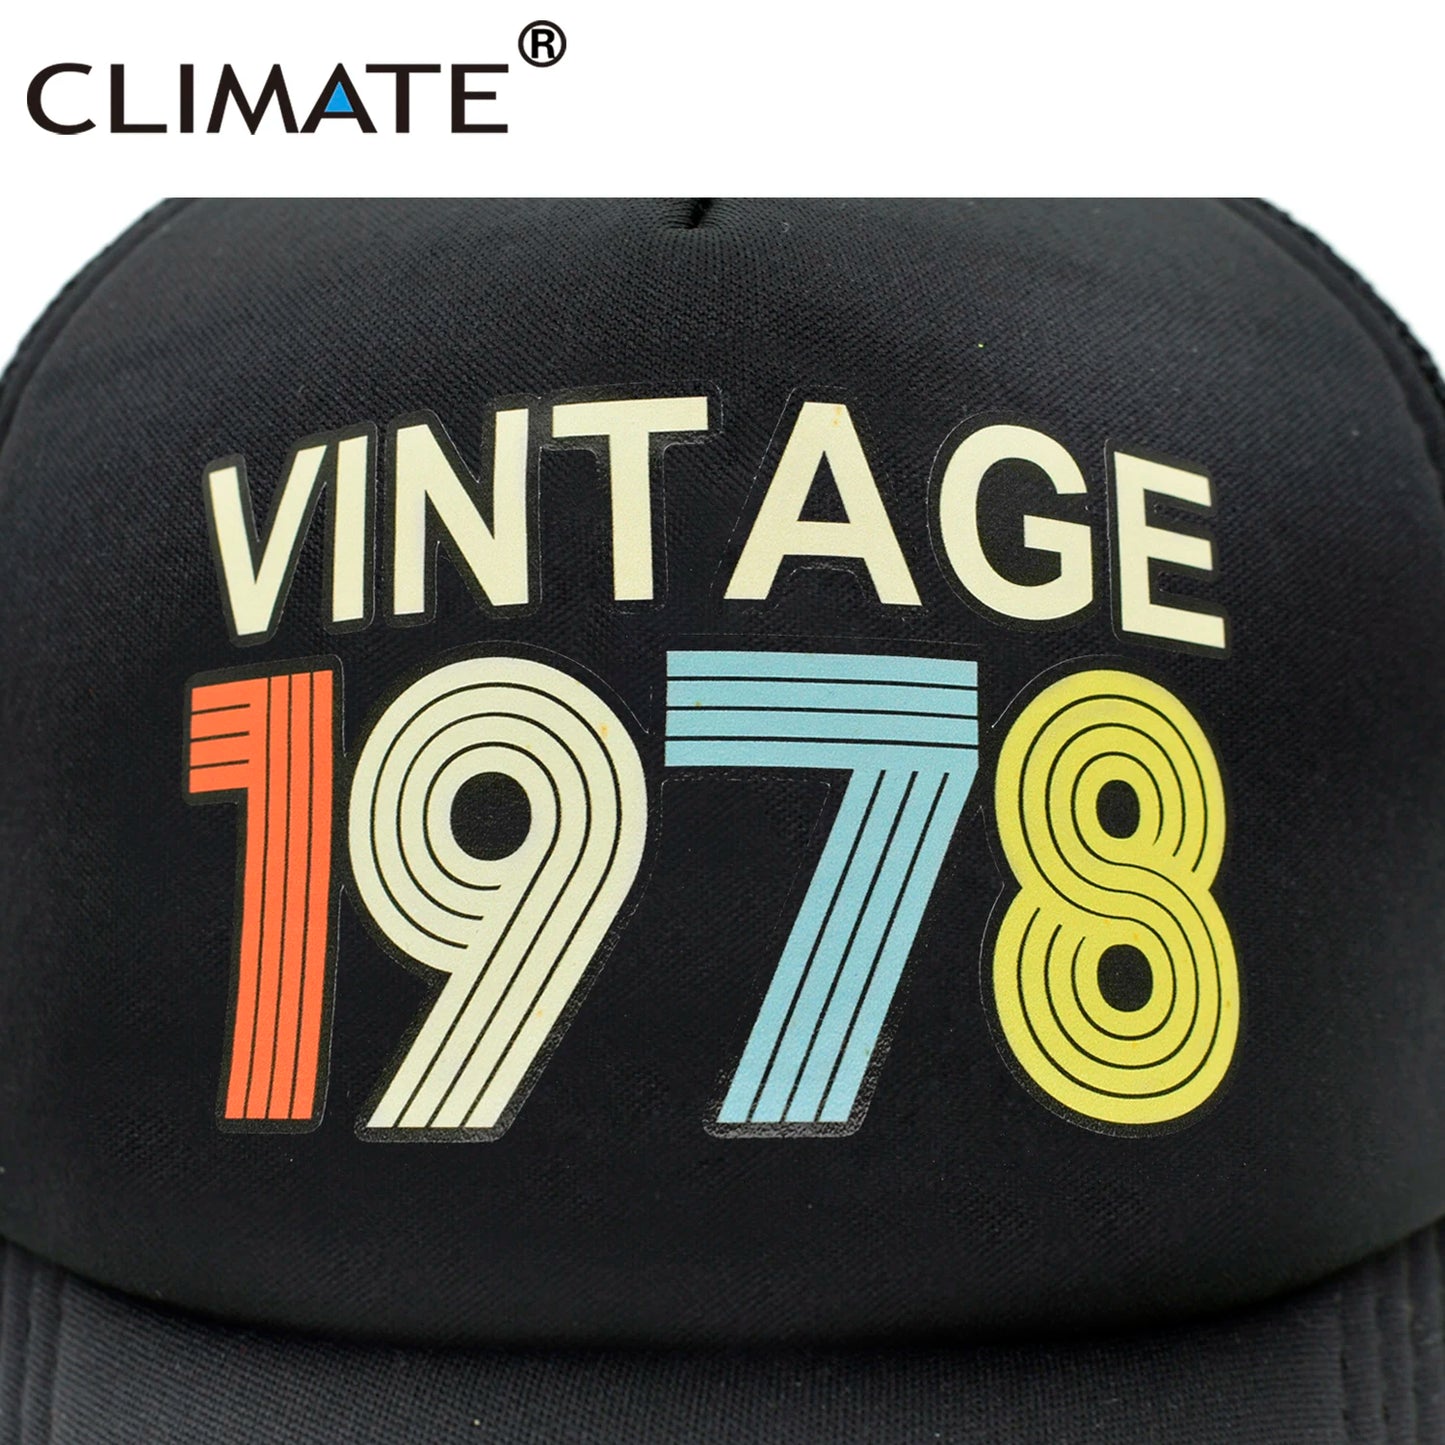 CLIMATE Vintage 1978 Cap 1978 Vintage caps Hat-Ryan fashion product